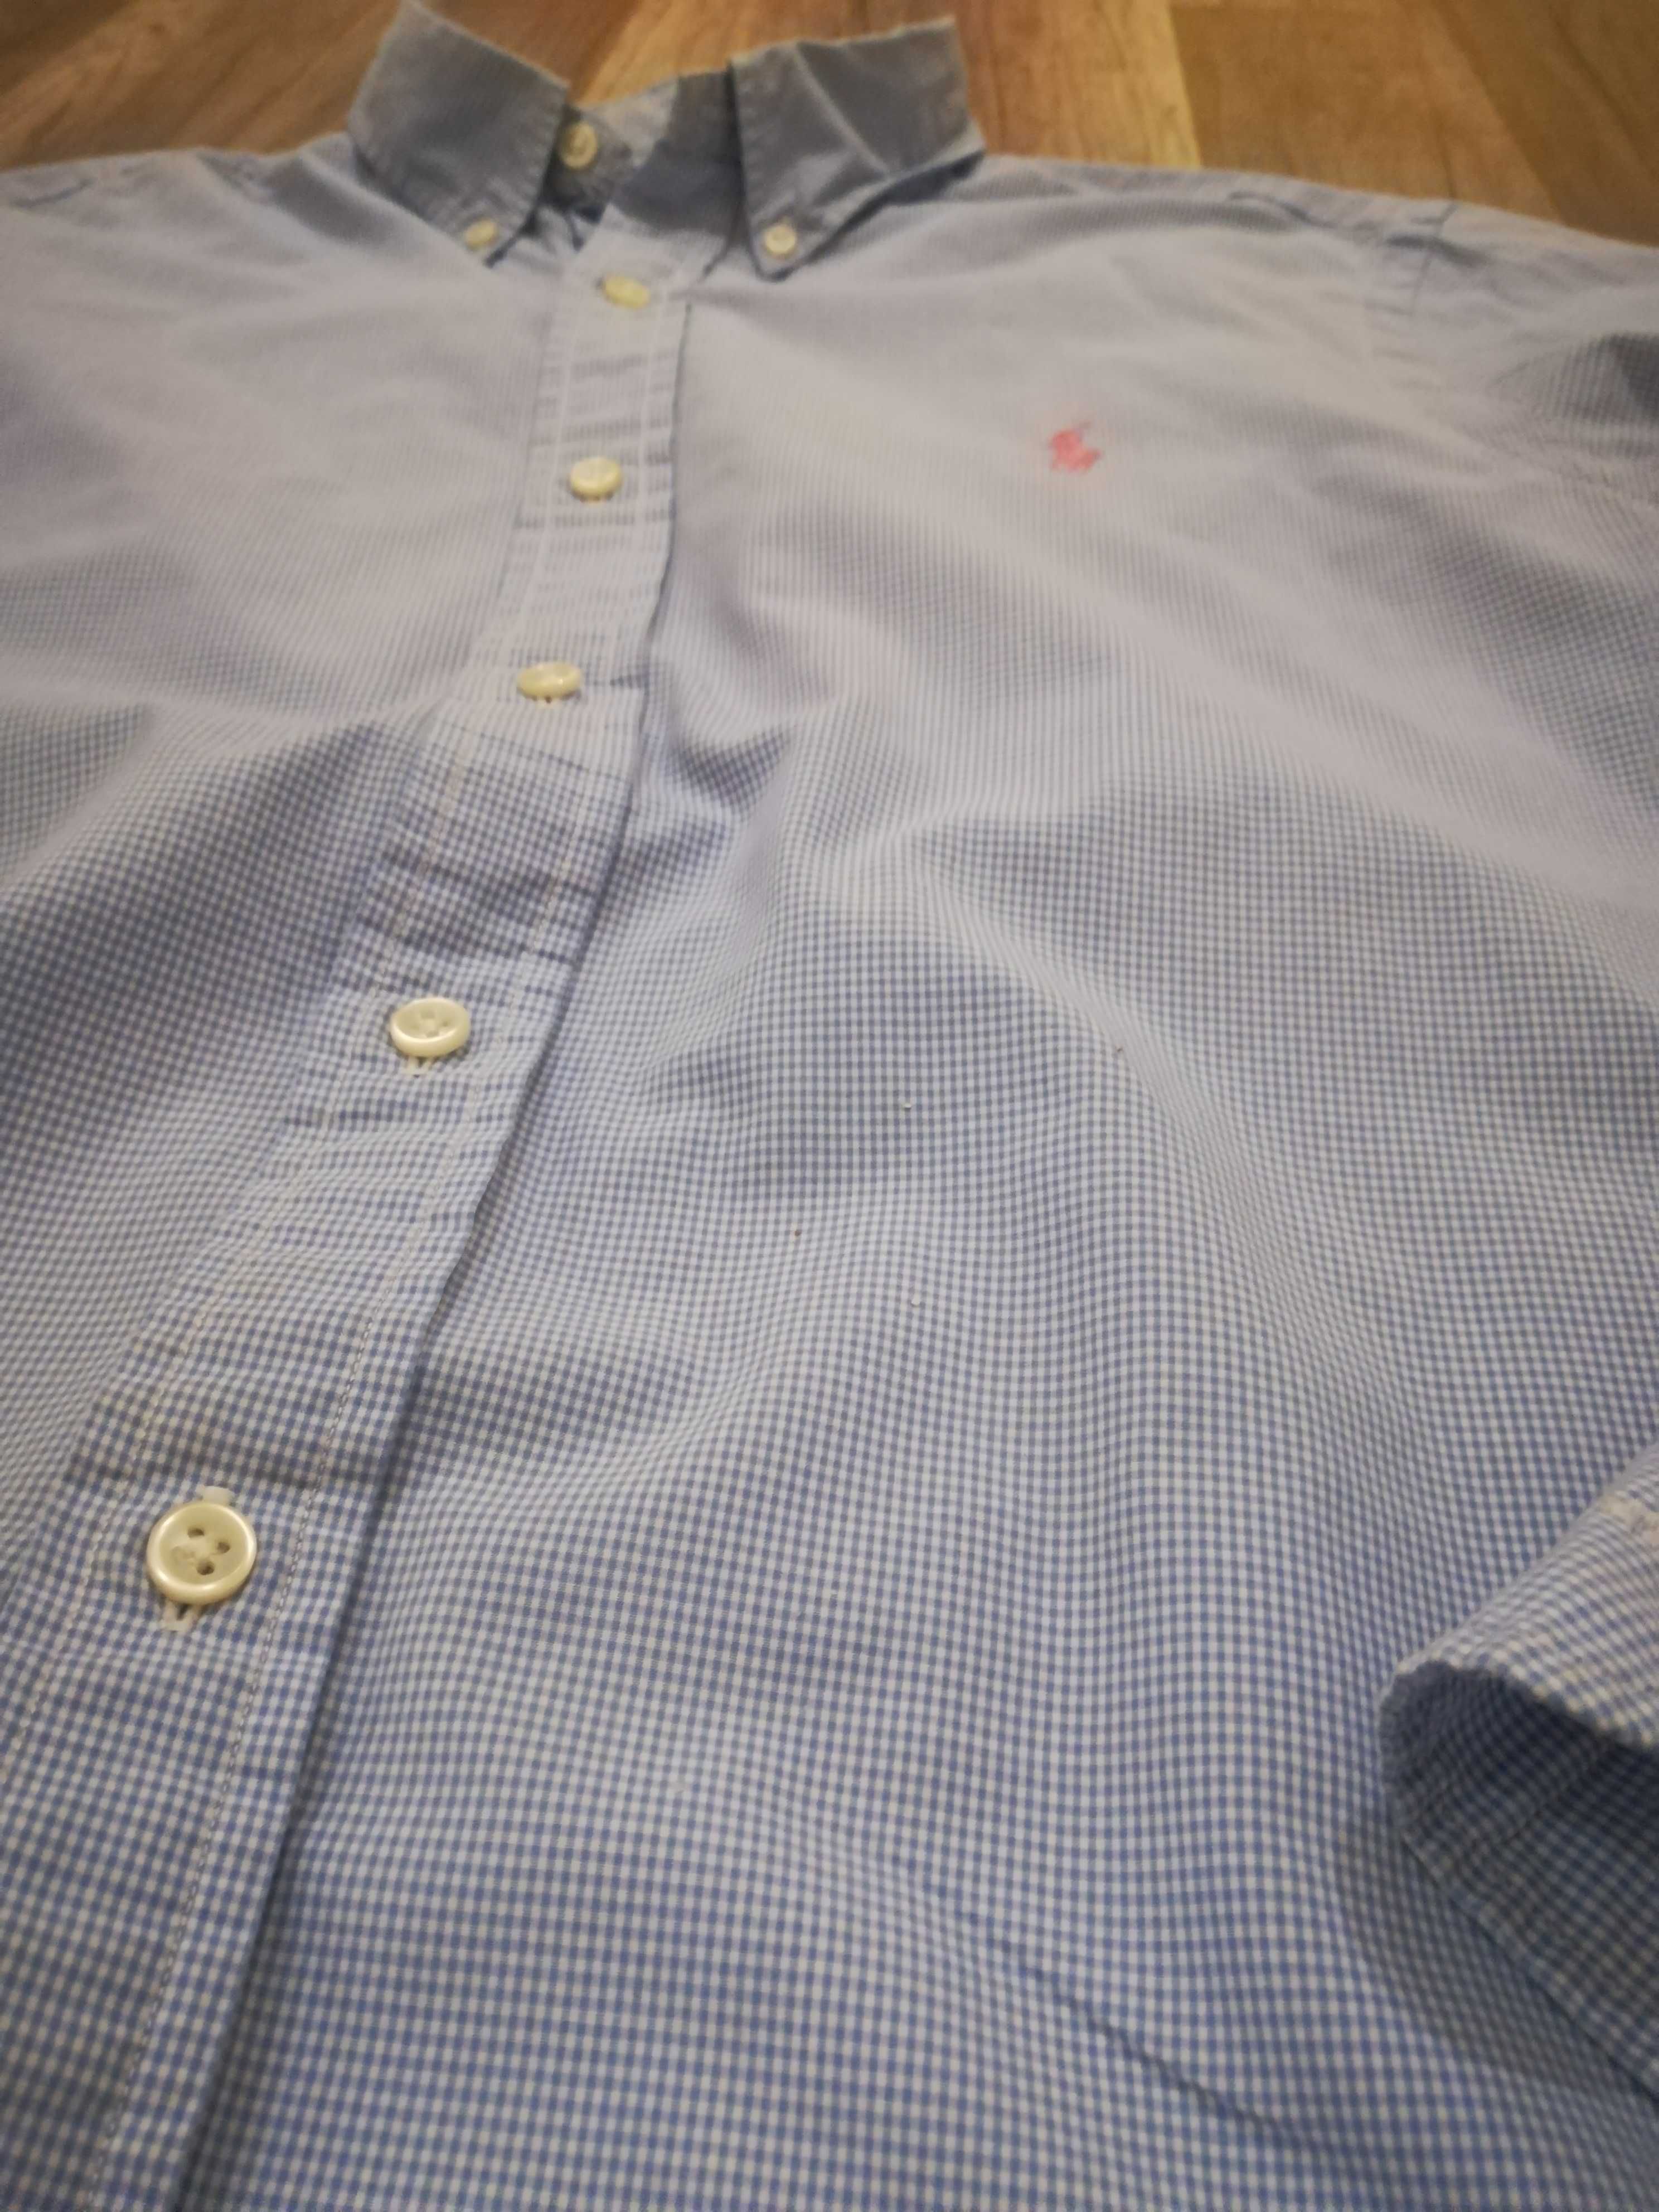 Оригинална мъжка риза марка "Polo  - Ralph Lauren"